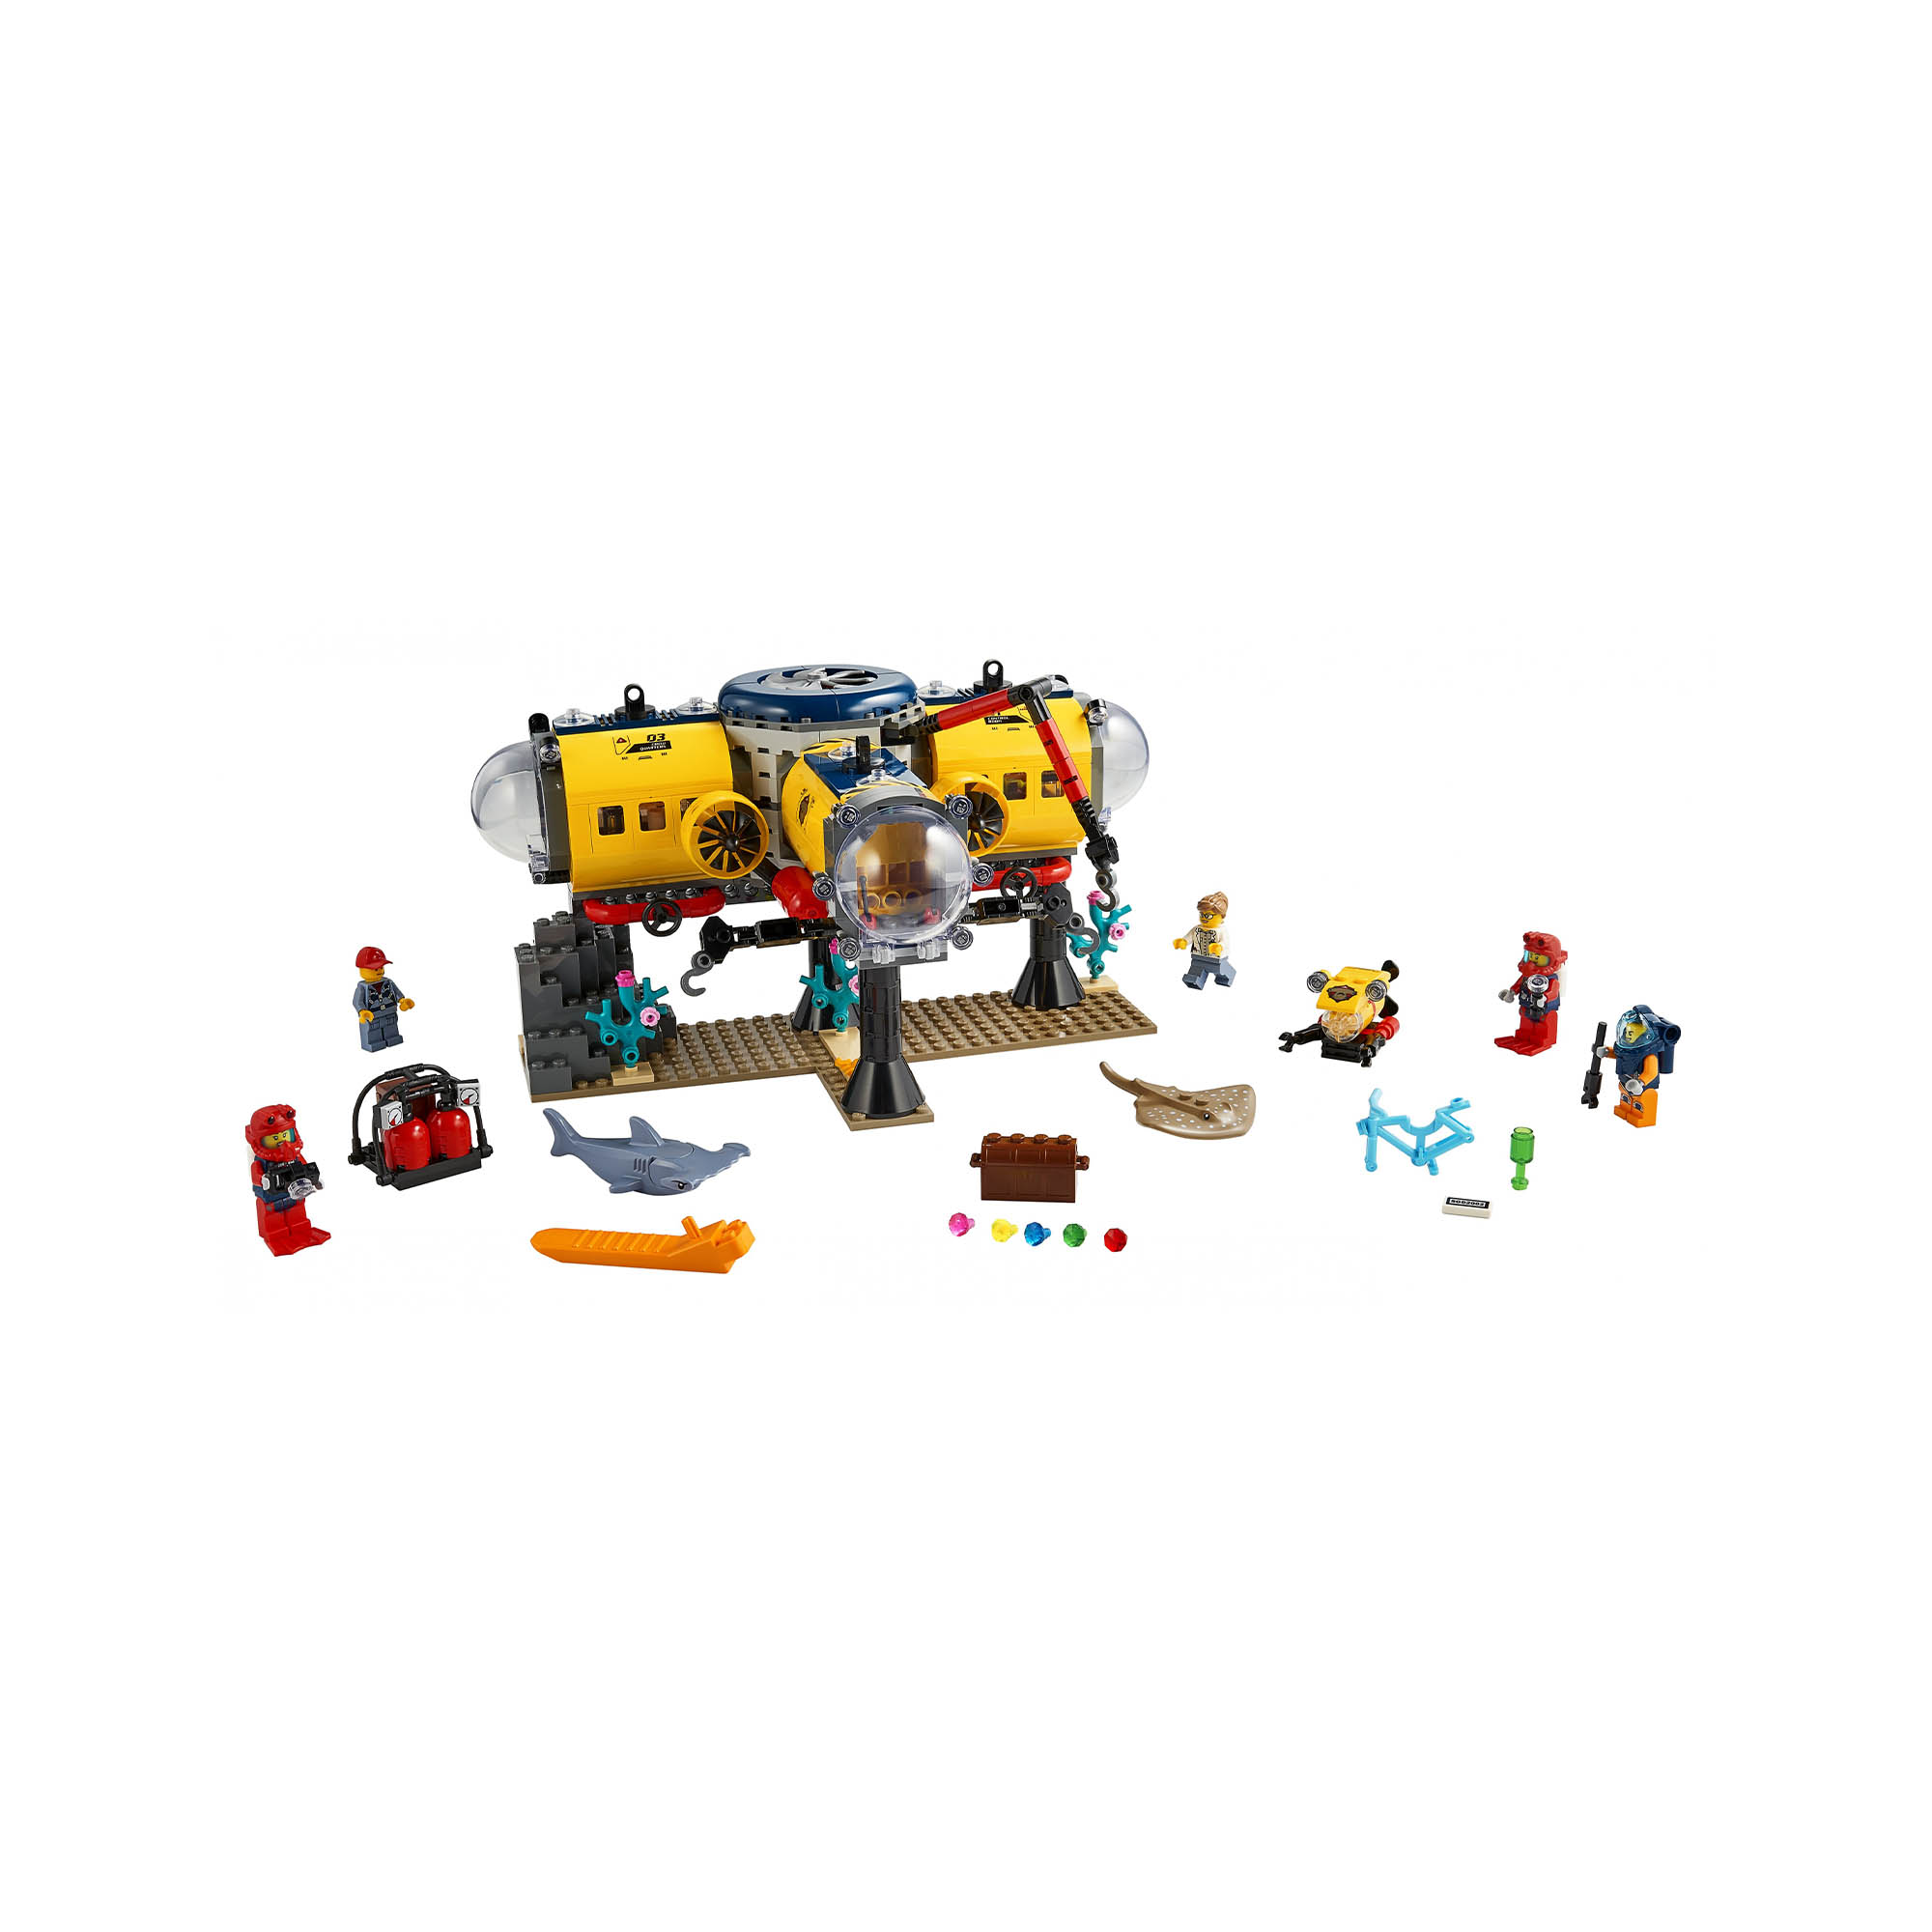 LEGO City Oceans Base per Esplorazioni Oceaniche, con Sottomarino Giocattolo, Dr 60265, , large